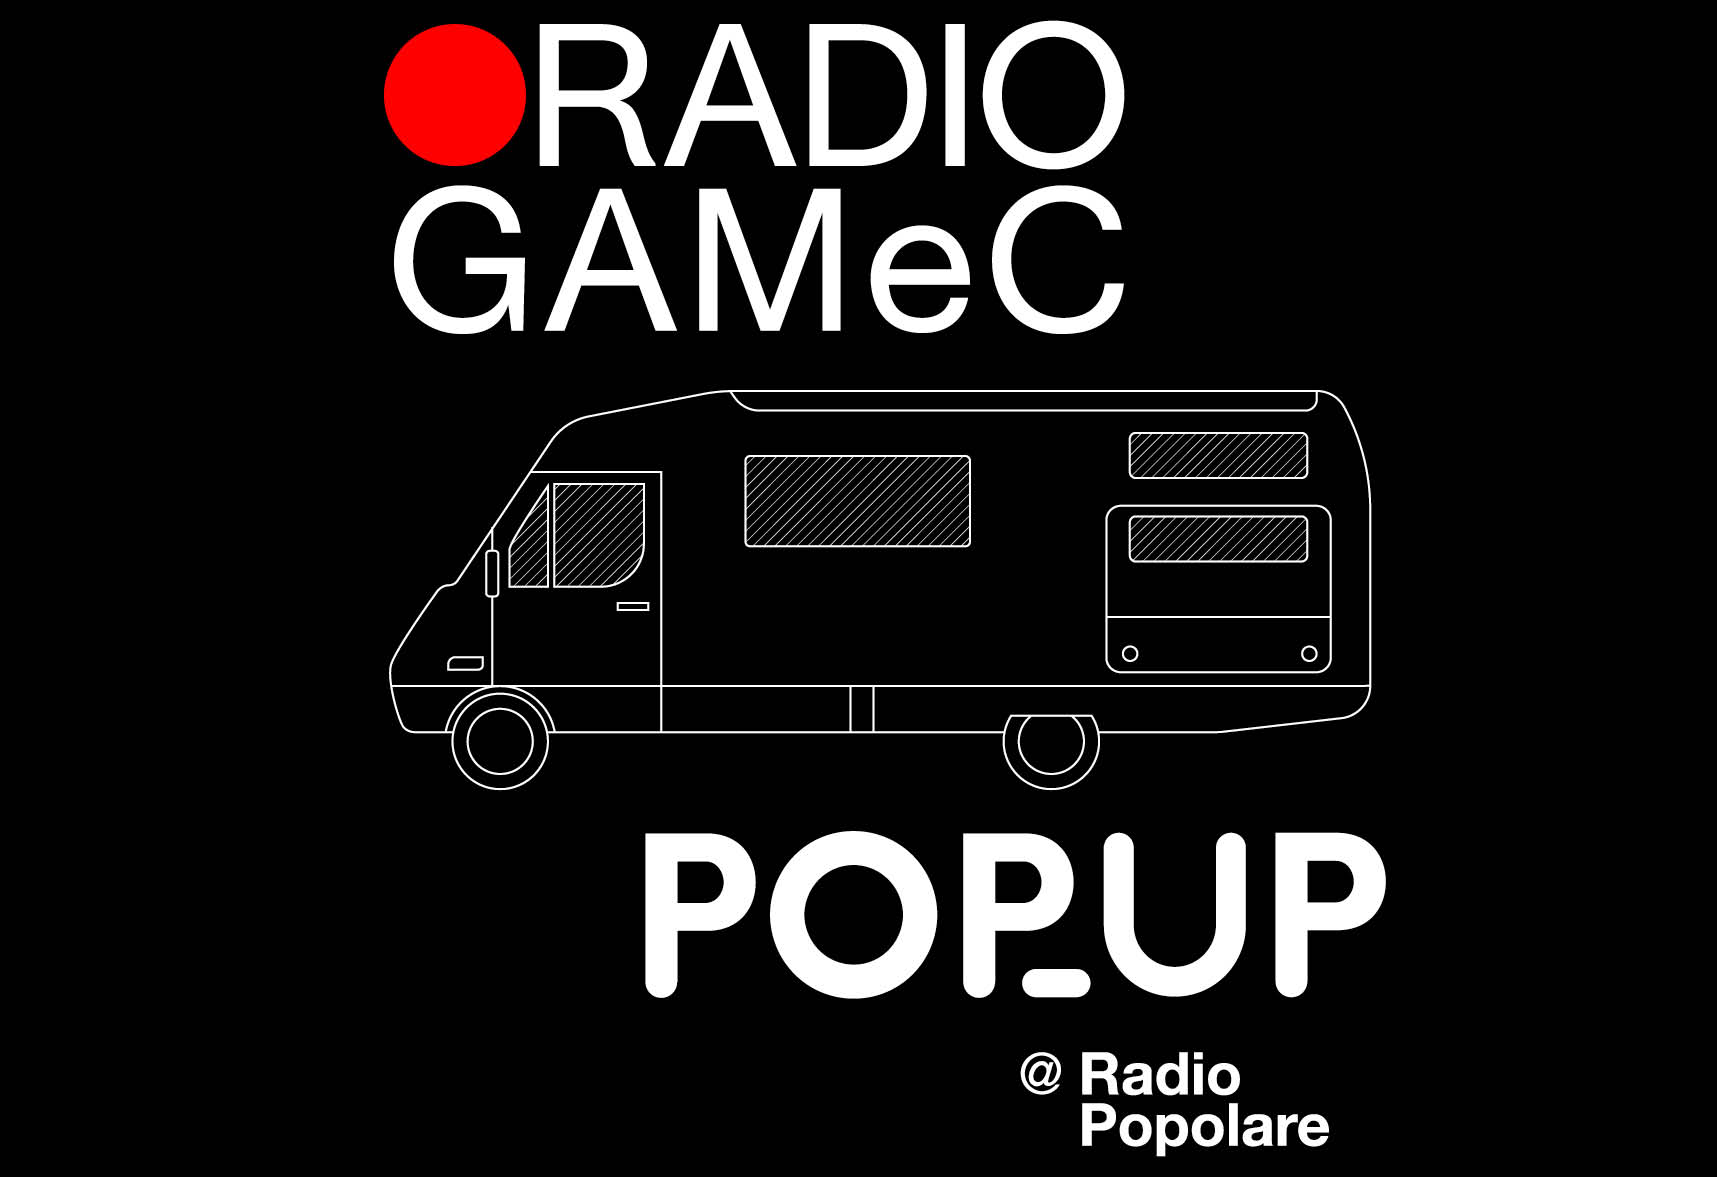 RADIO GAMeC PopUp